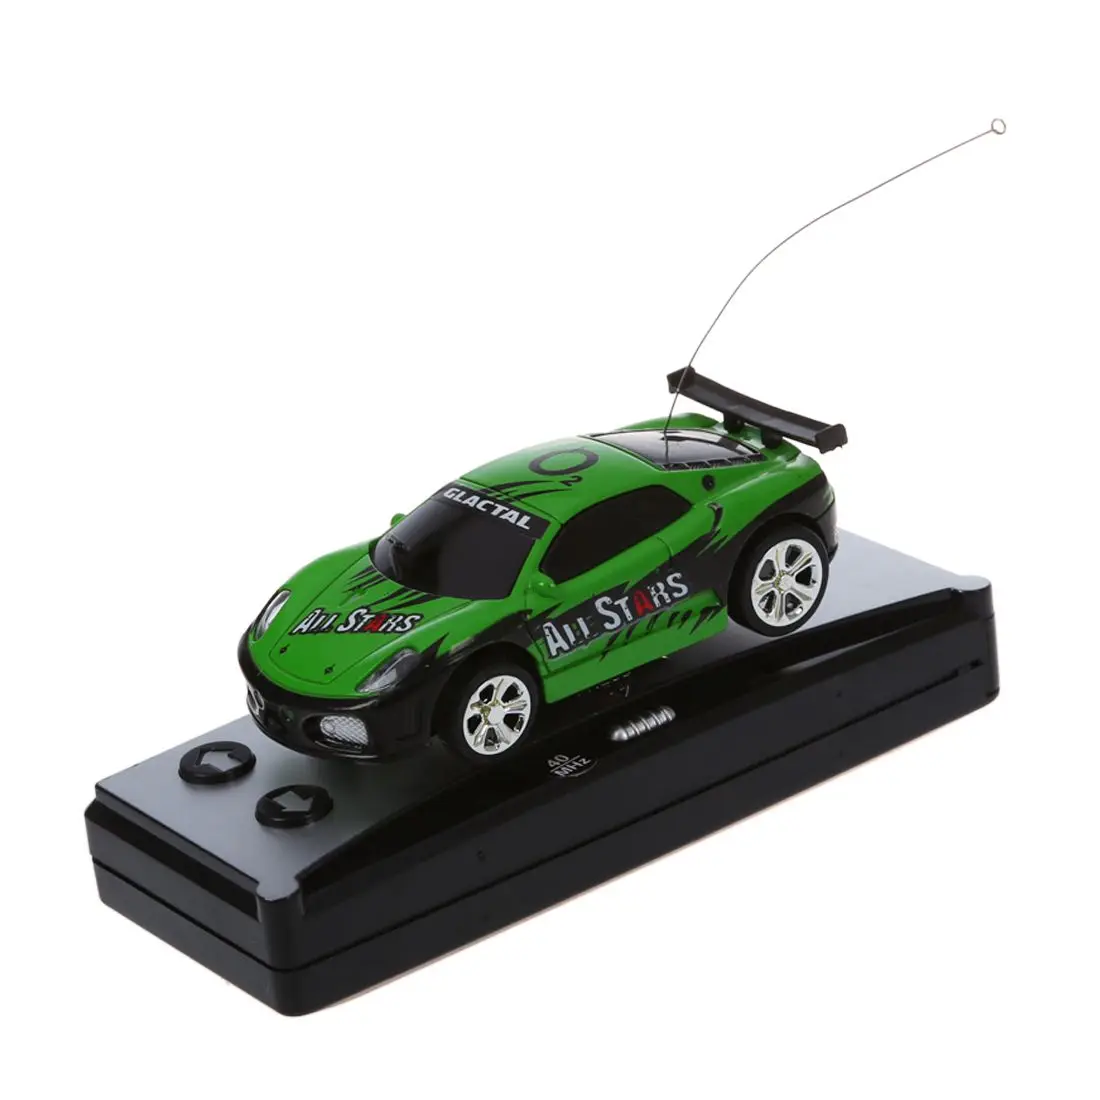 Горячие AMS-Мини RC автомобиль с дистанционным управлением игрушечные гоночные автомобили в банка с напитком 1:58 (зеленый) Новый